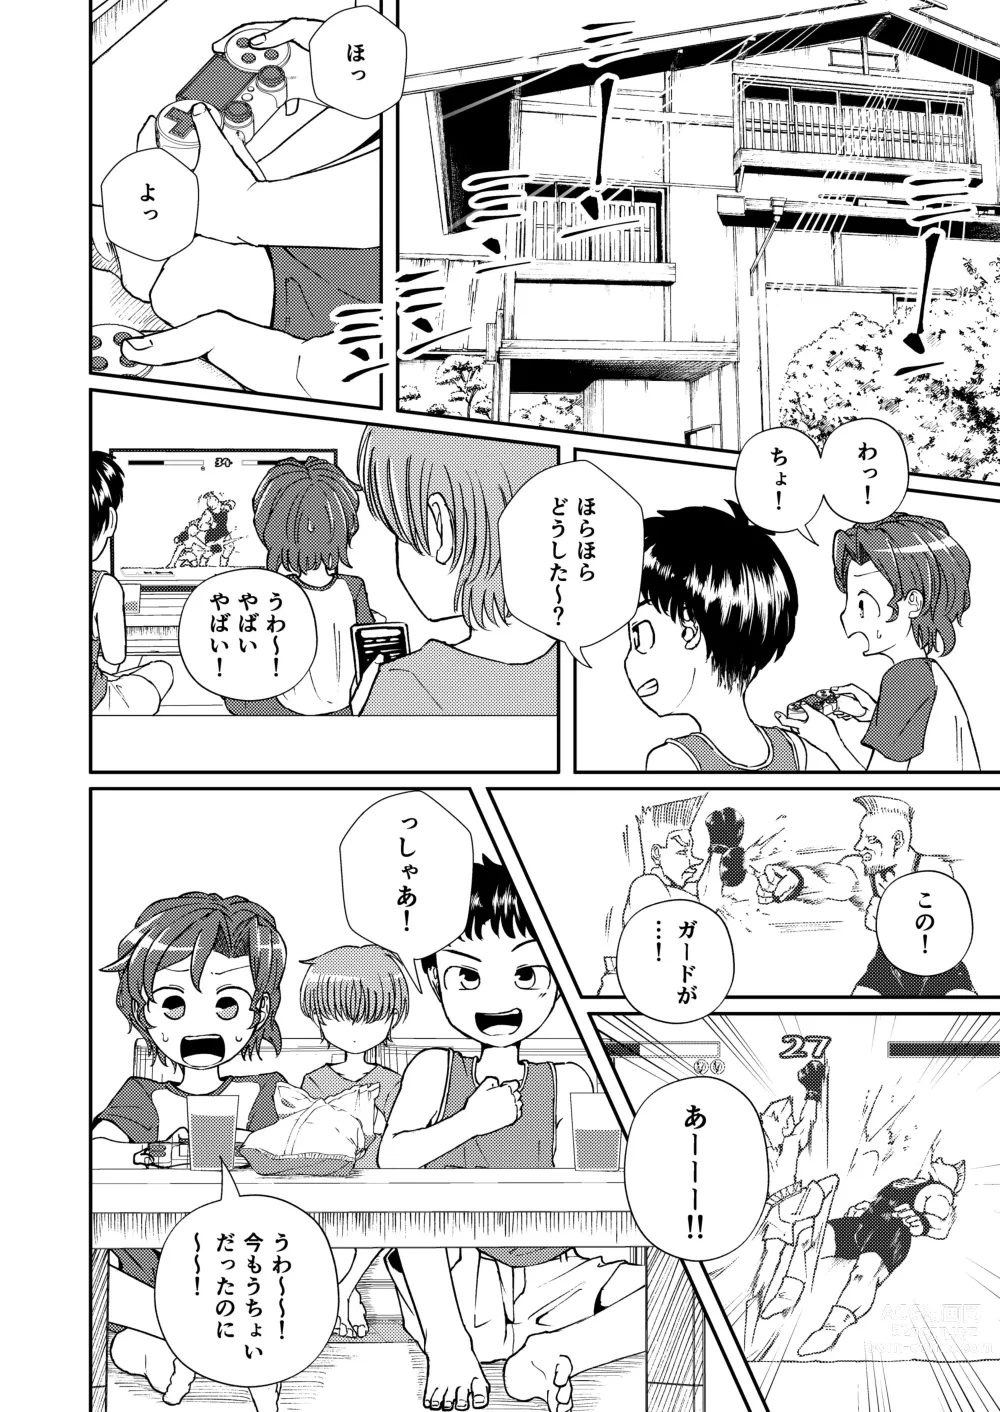 Page 4 of doujinshi Shoujiki Iu to,